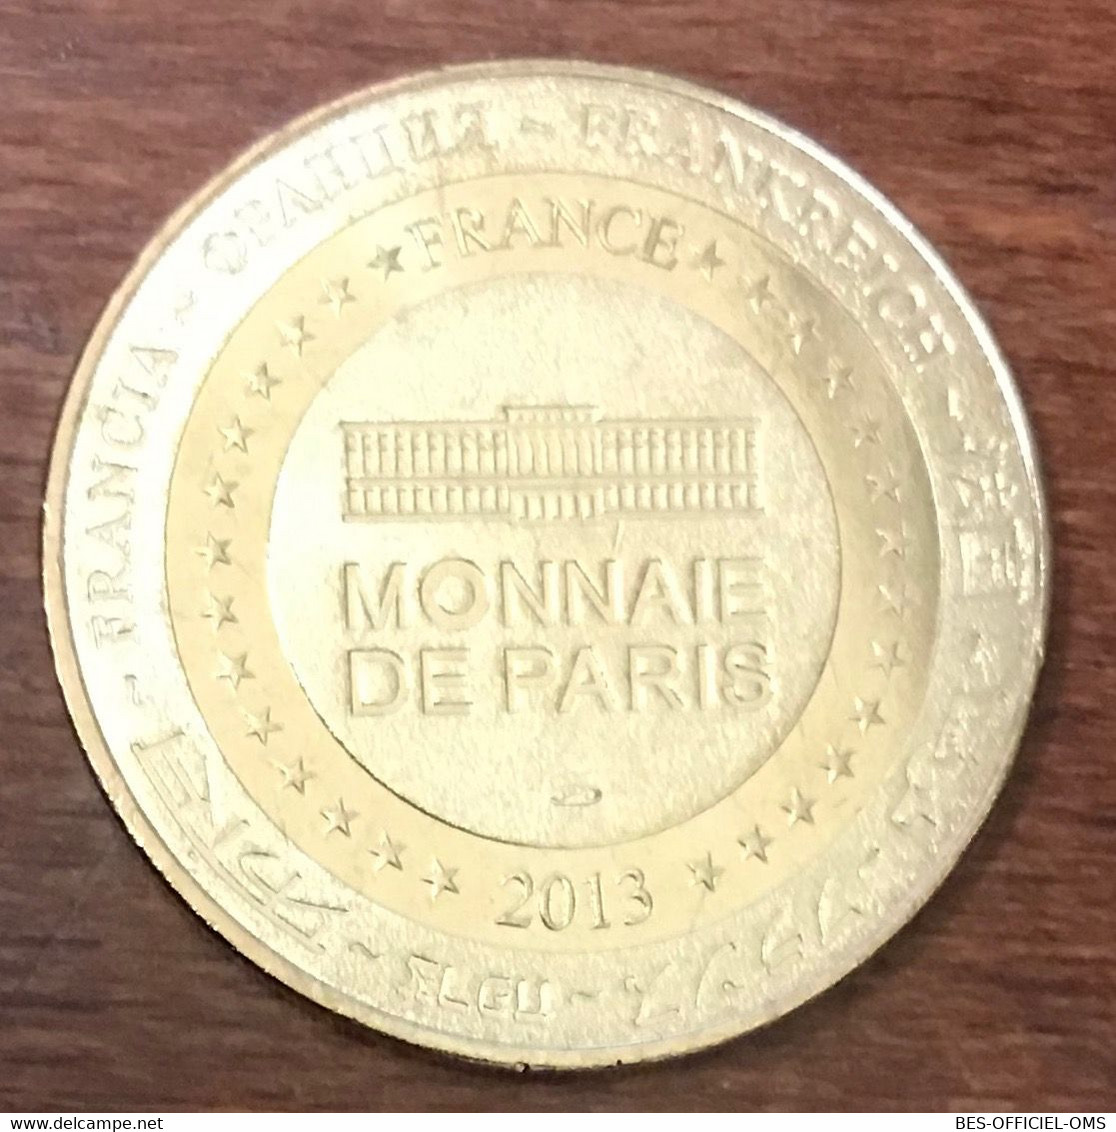 24 LES JARDINS DU MANOIR D'EYRIGNAC MEDAILLE SOUVENIR MONNAIE DE PARIS 2013 JETON TOURISTIQUE MEDALS COINS TOKENS - 2013